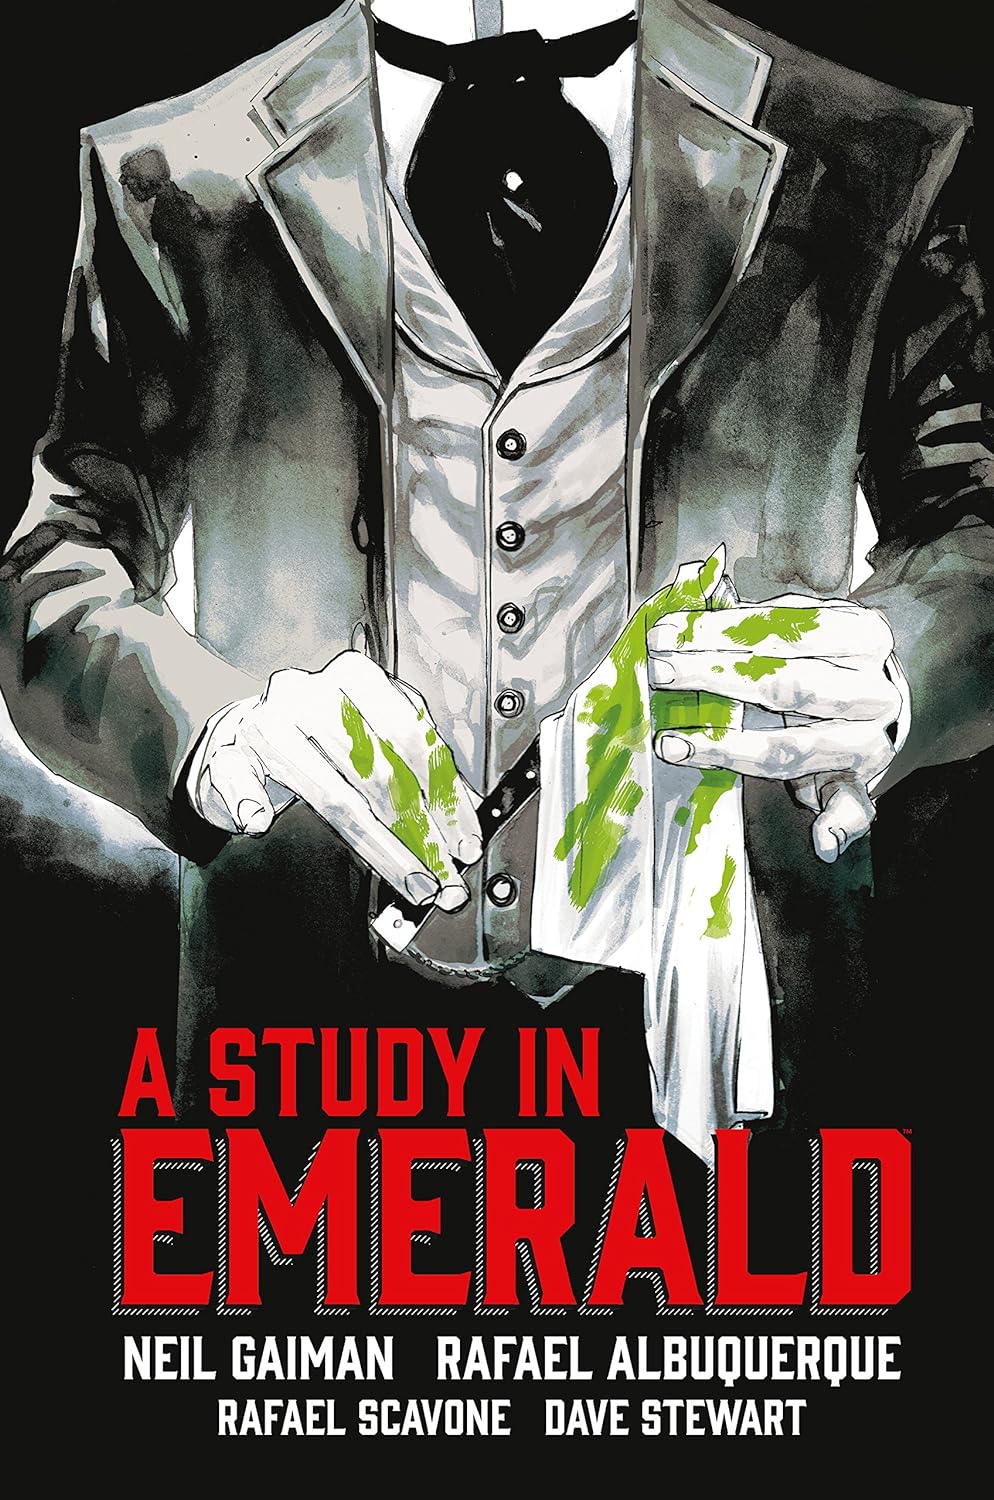 Neil Gaiman, Rafael Albuquerque, Rafael Scavone, Dave Stewart: Neil Gaiman's a Study in Emerald (Hardcover, 2018, Dark Horse Comics)